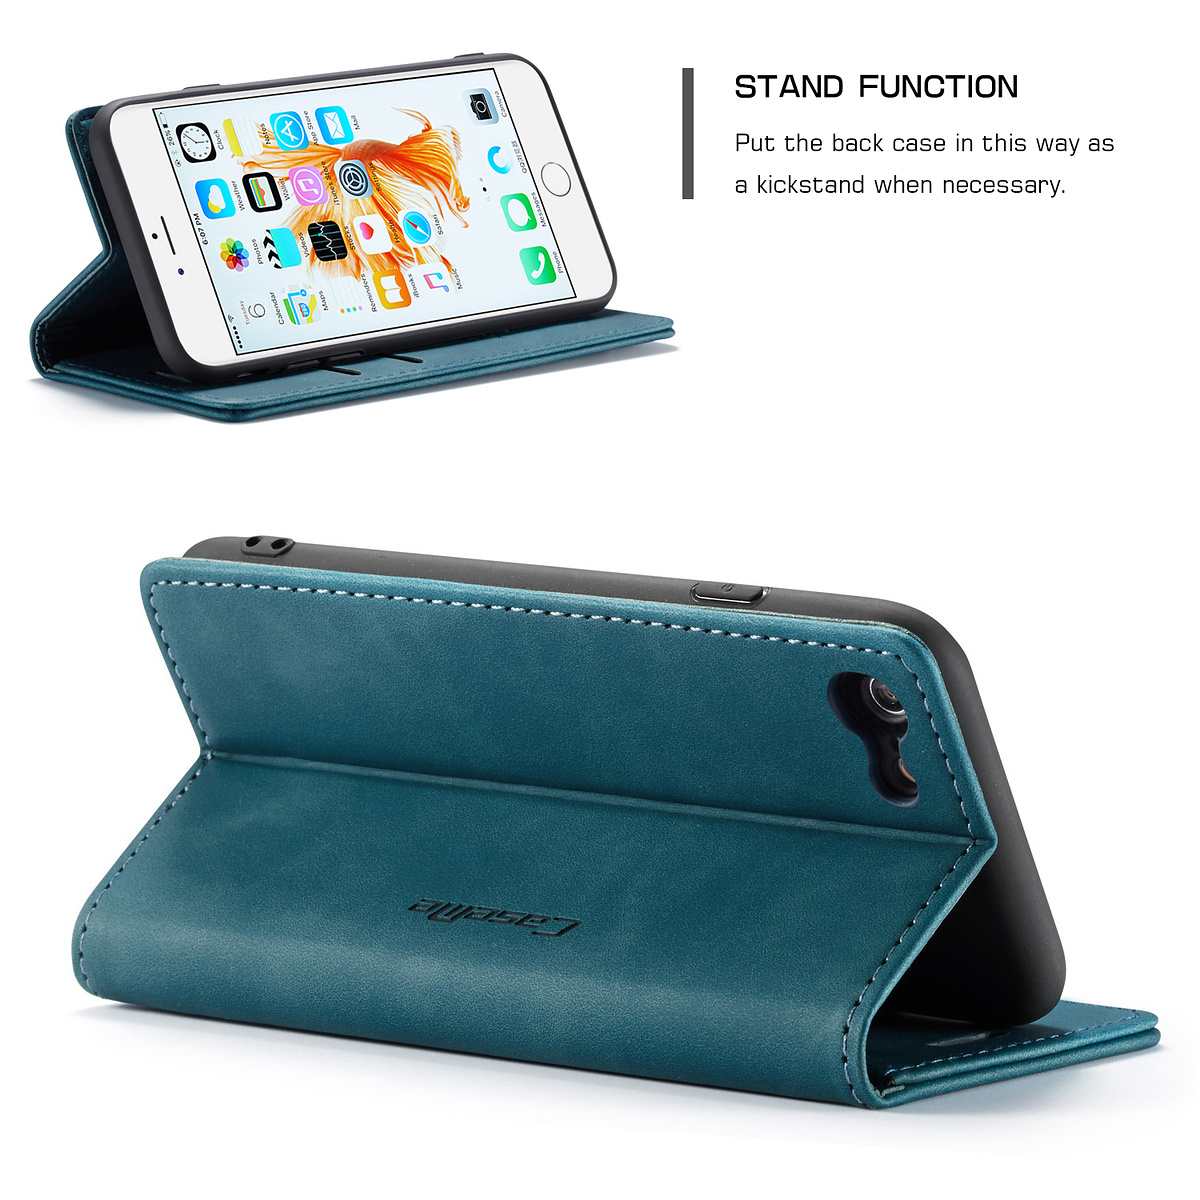 CaseMe plånboksfodral, iPhone 6/6S, blå